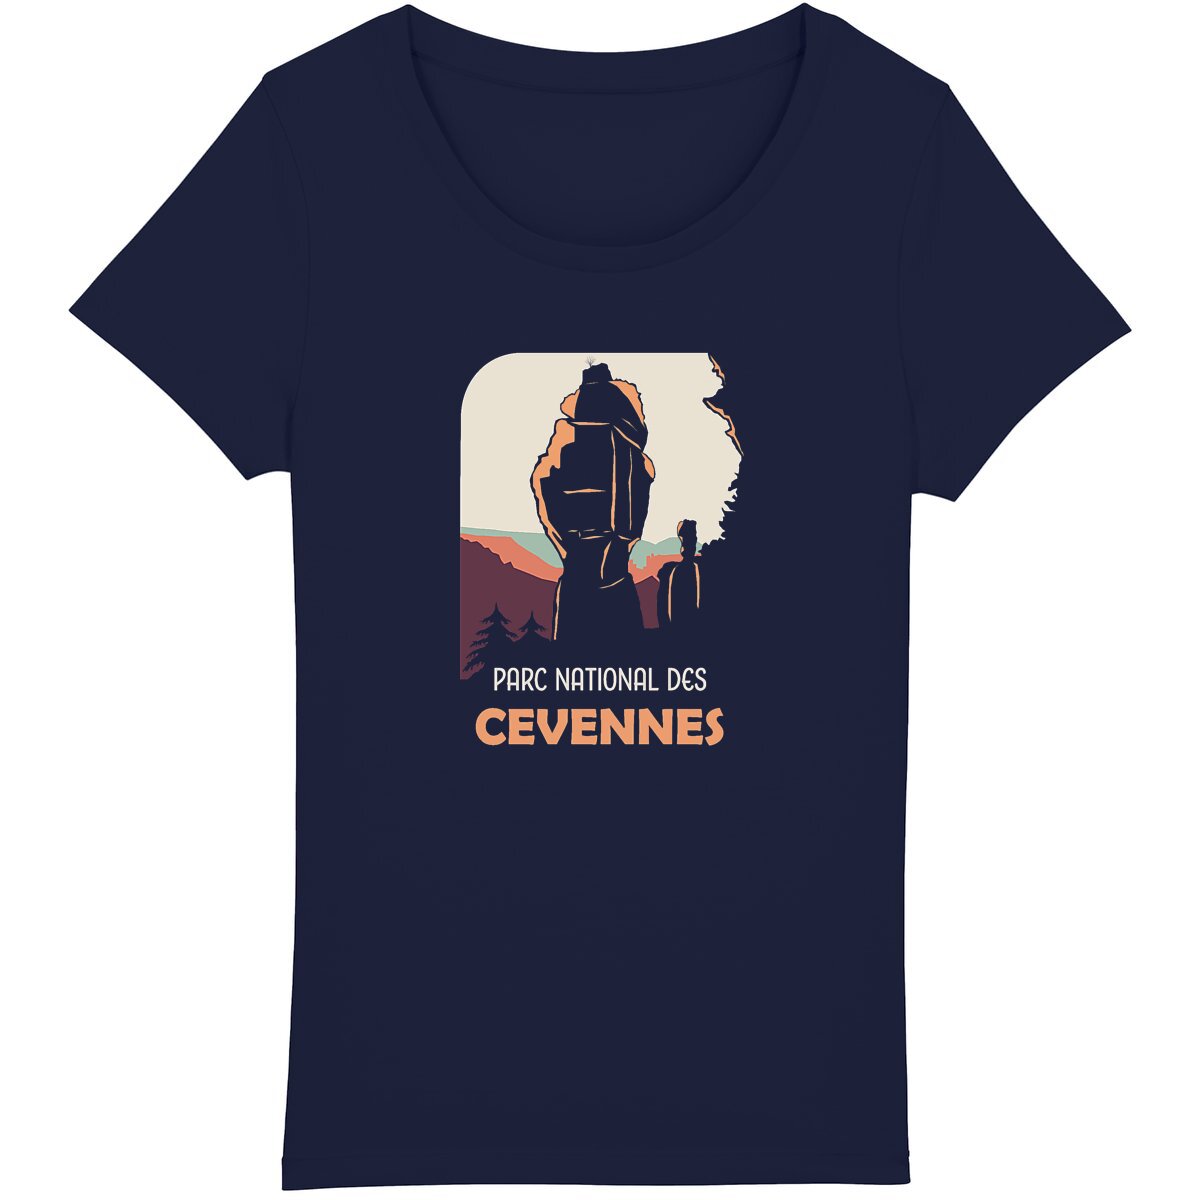 T-shirt coton bio femme inspiré par le Parc national des Cévennes